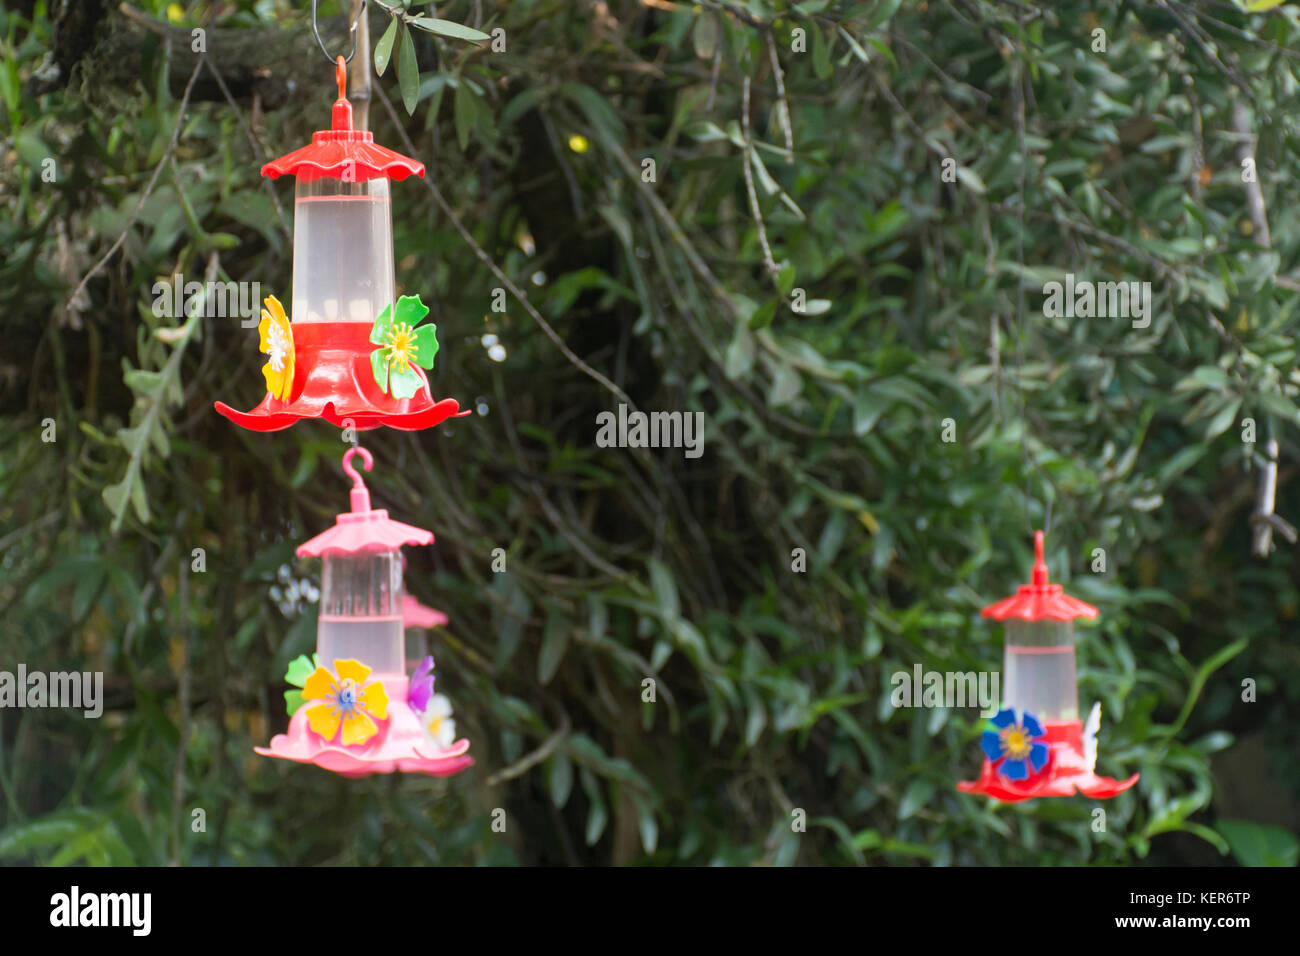 Hummingbird feeder in a garden Stock Photo